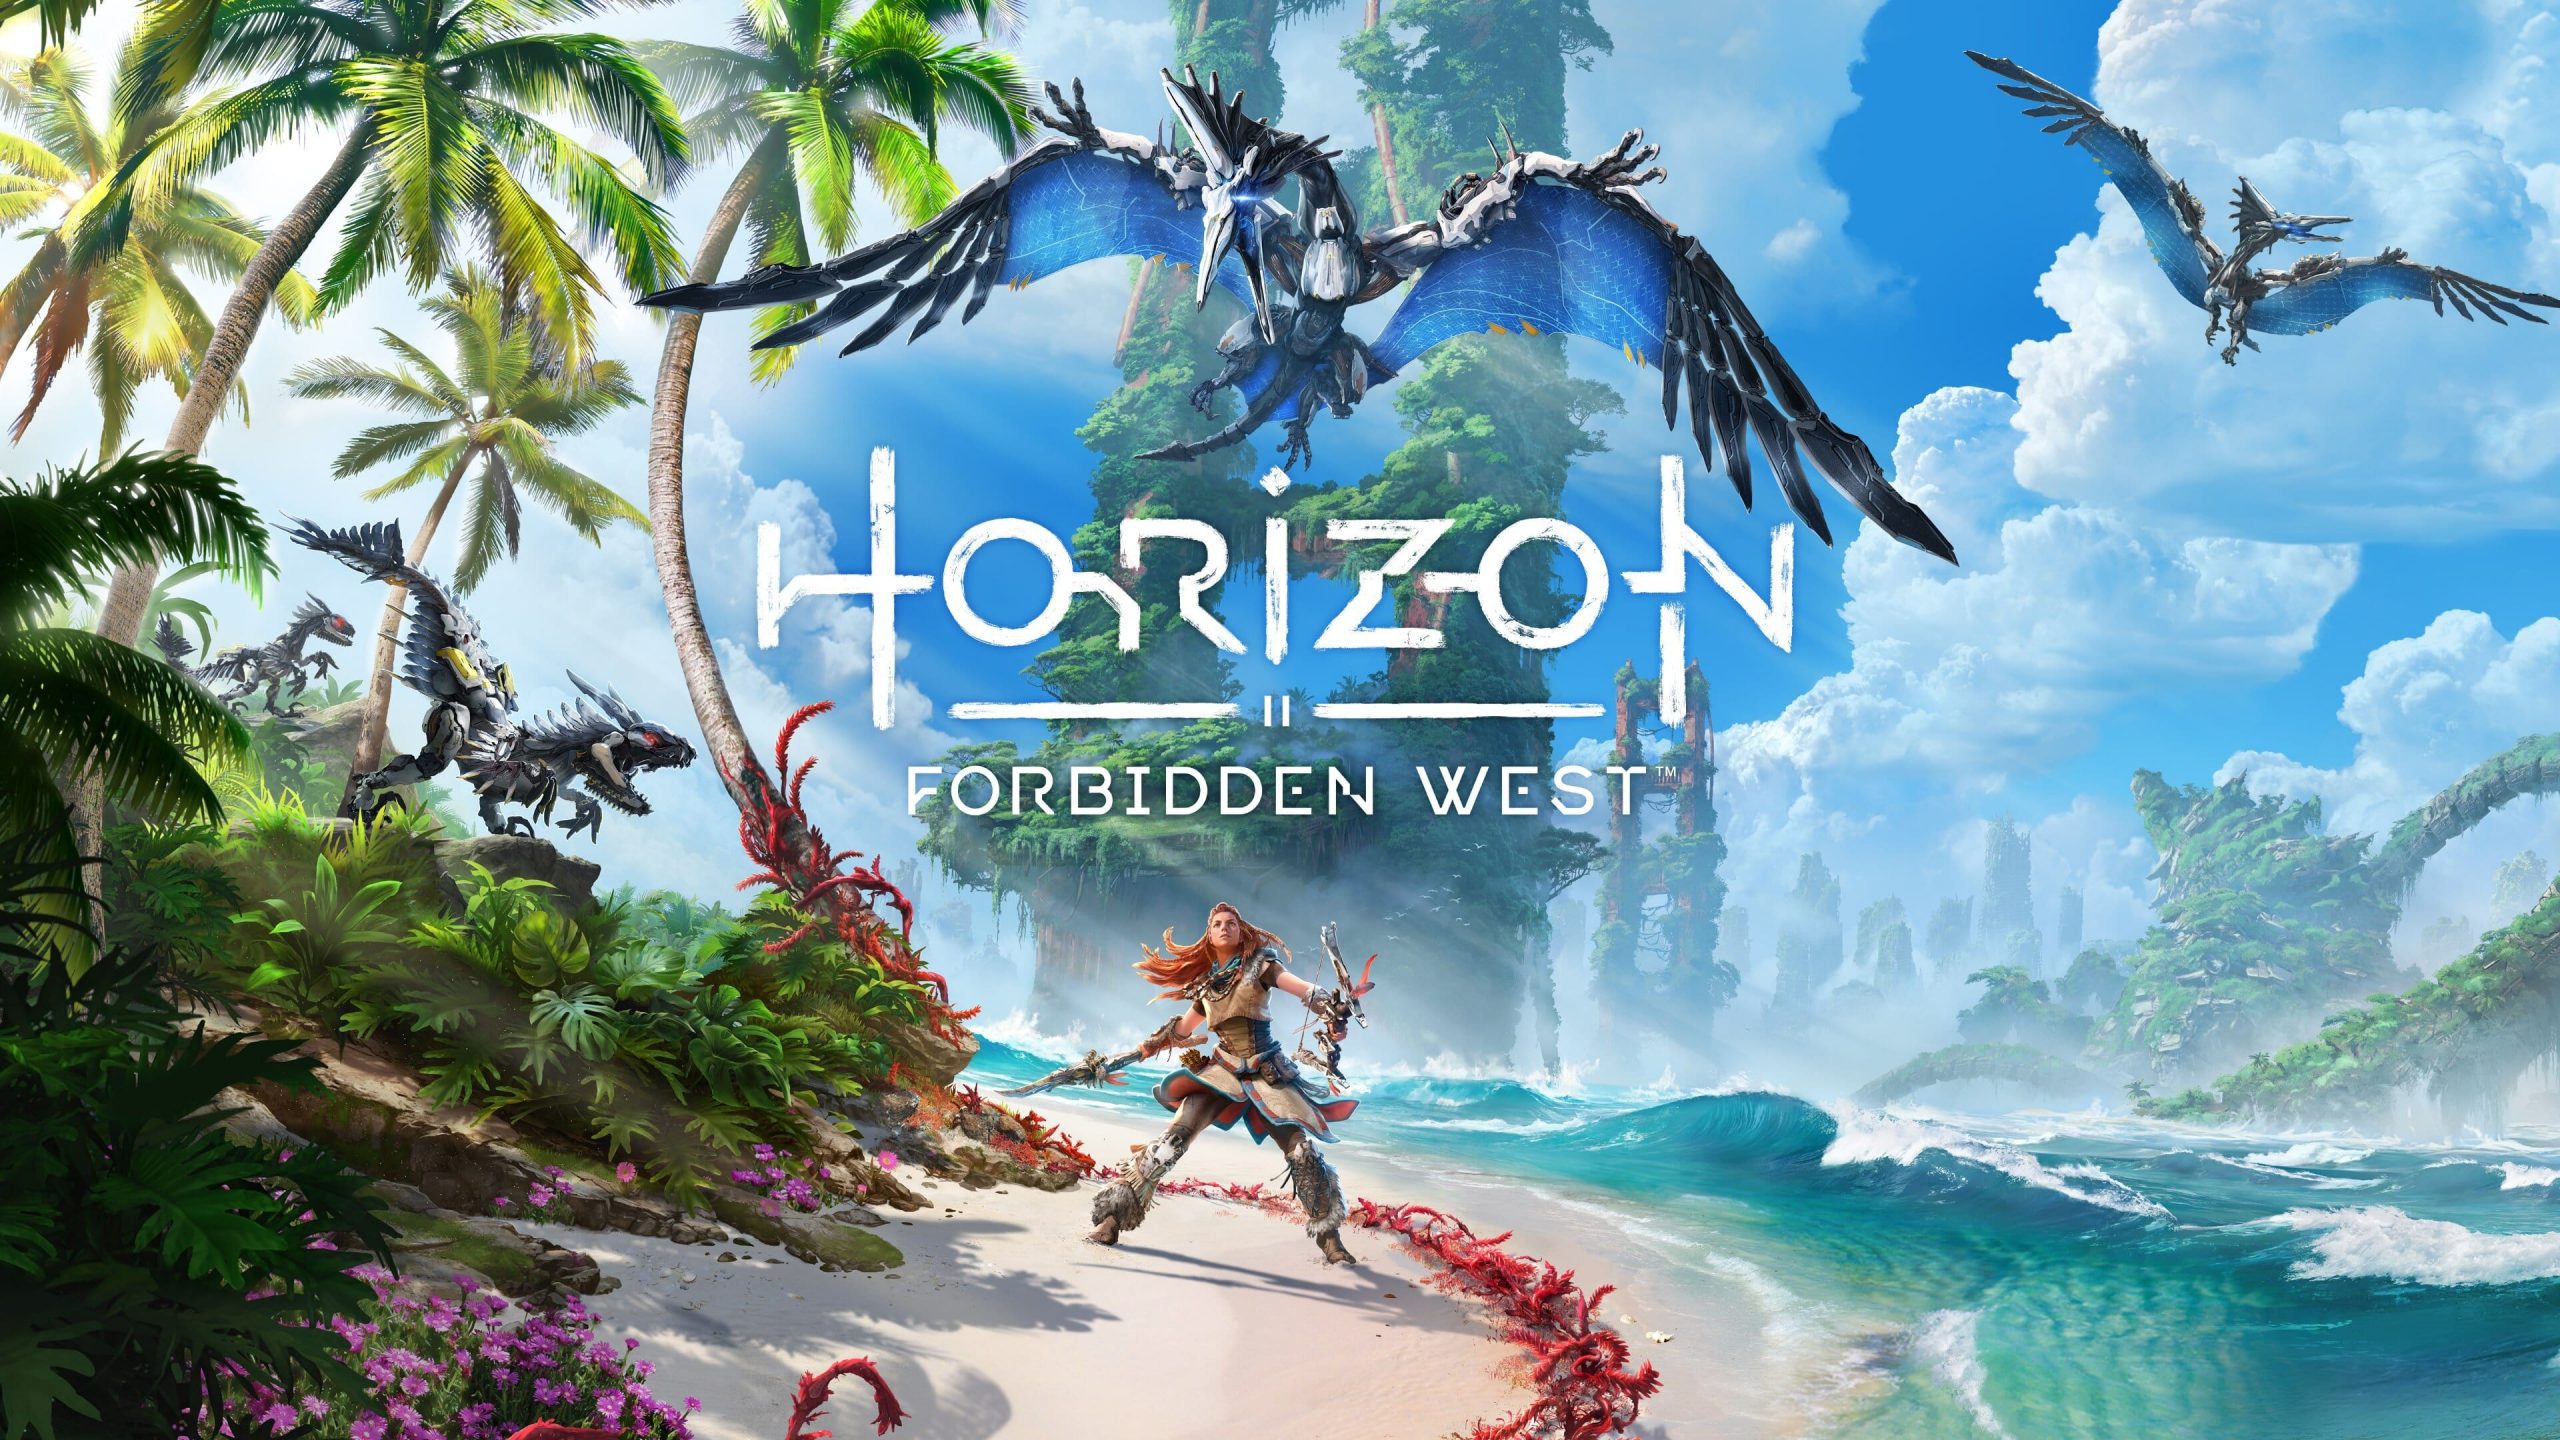 Horizon Zero Dawn e mais nove jogos ficam grátis na PS Store em